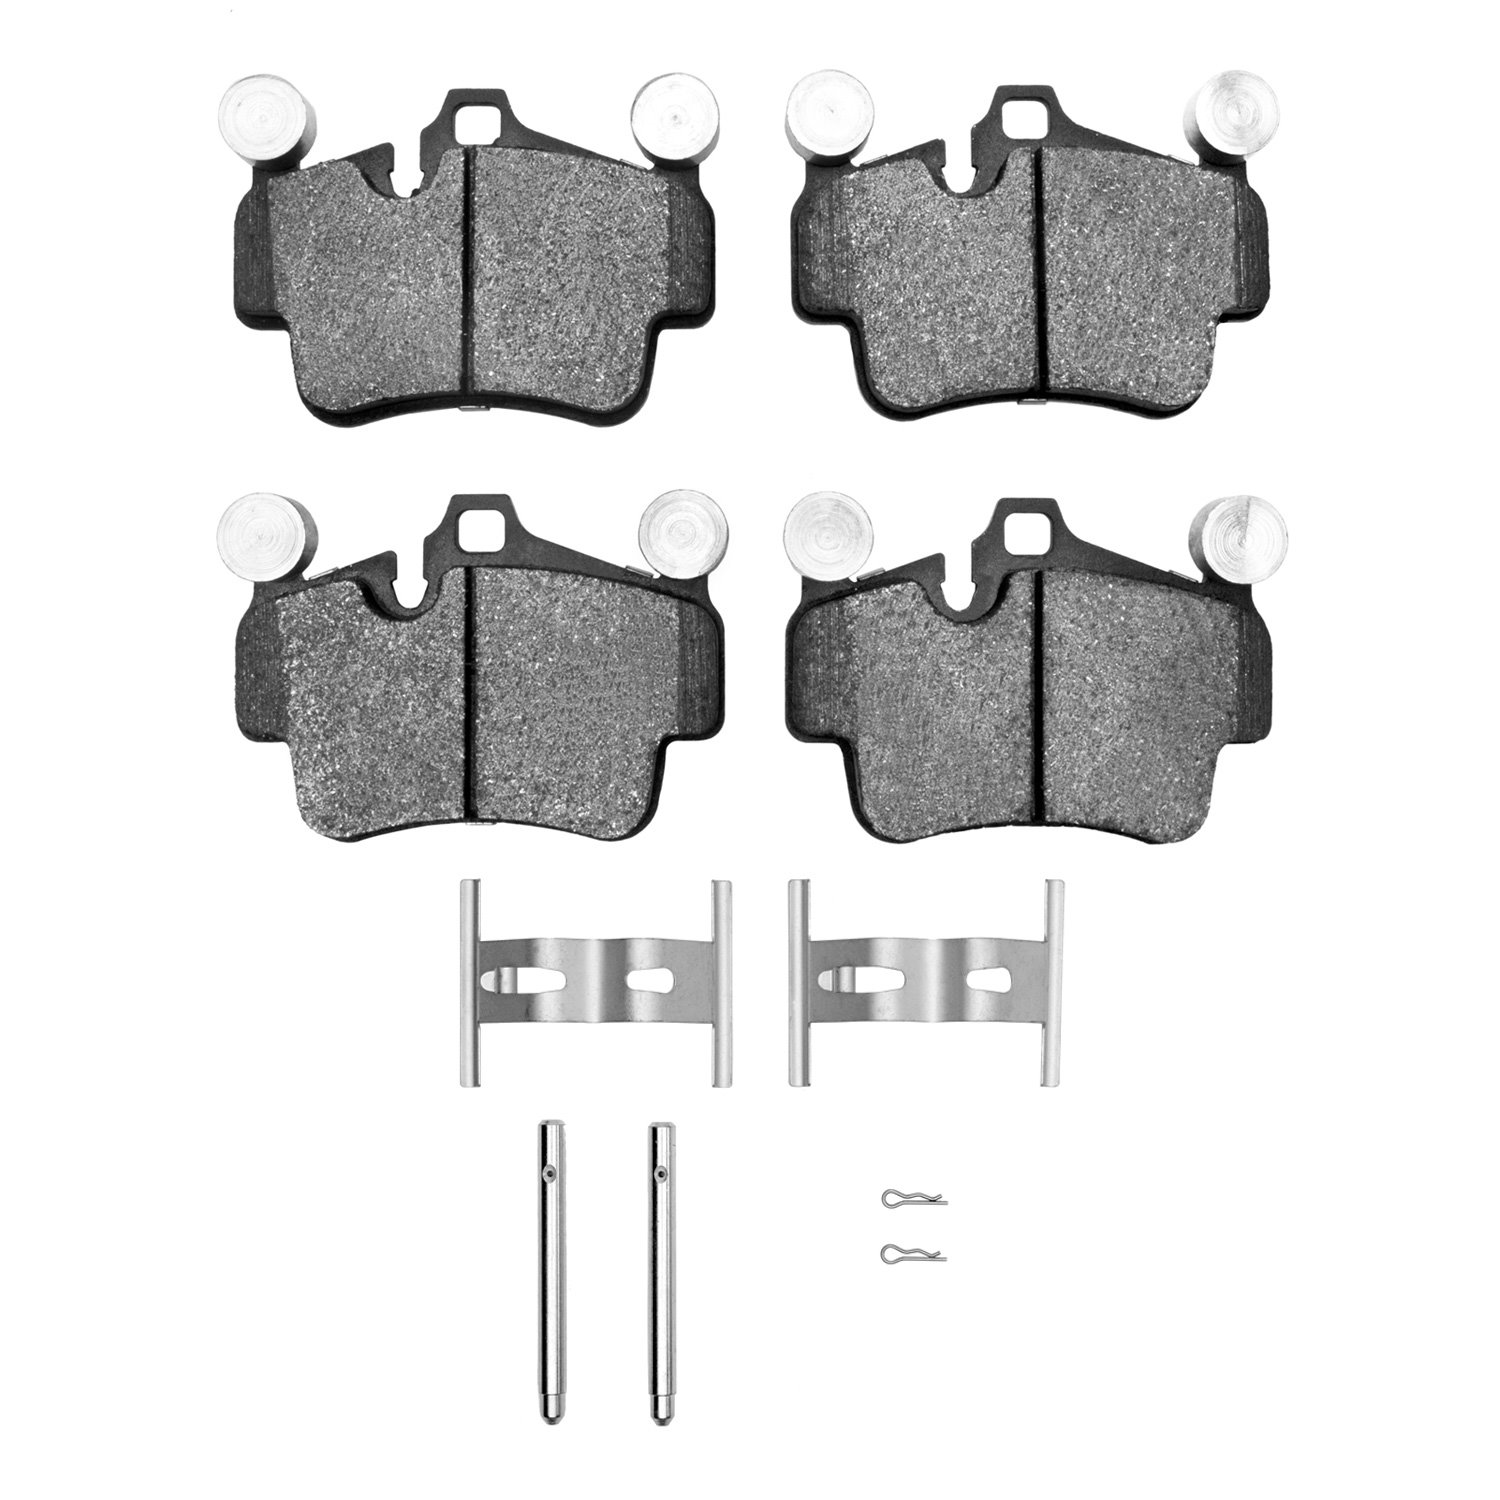 1551-1135-01 5000 Advanced Low-Metallic Brake Pads & Hardware Kit, 2003-2016 Porsche, Position: Rear